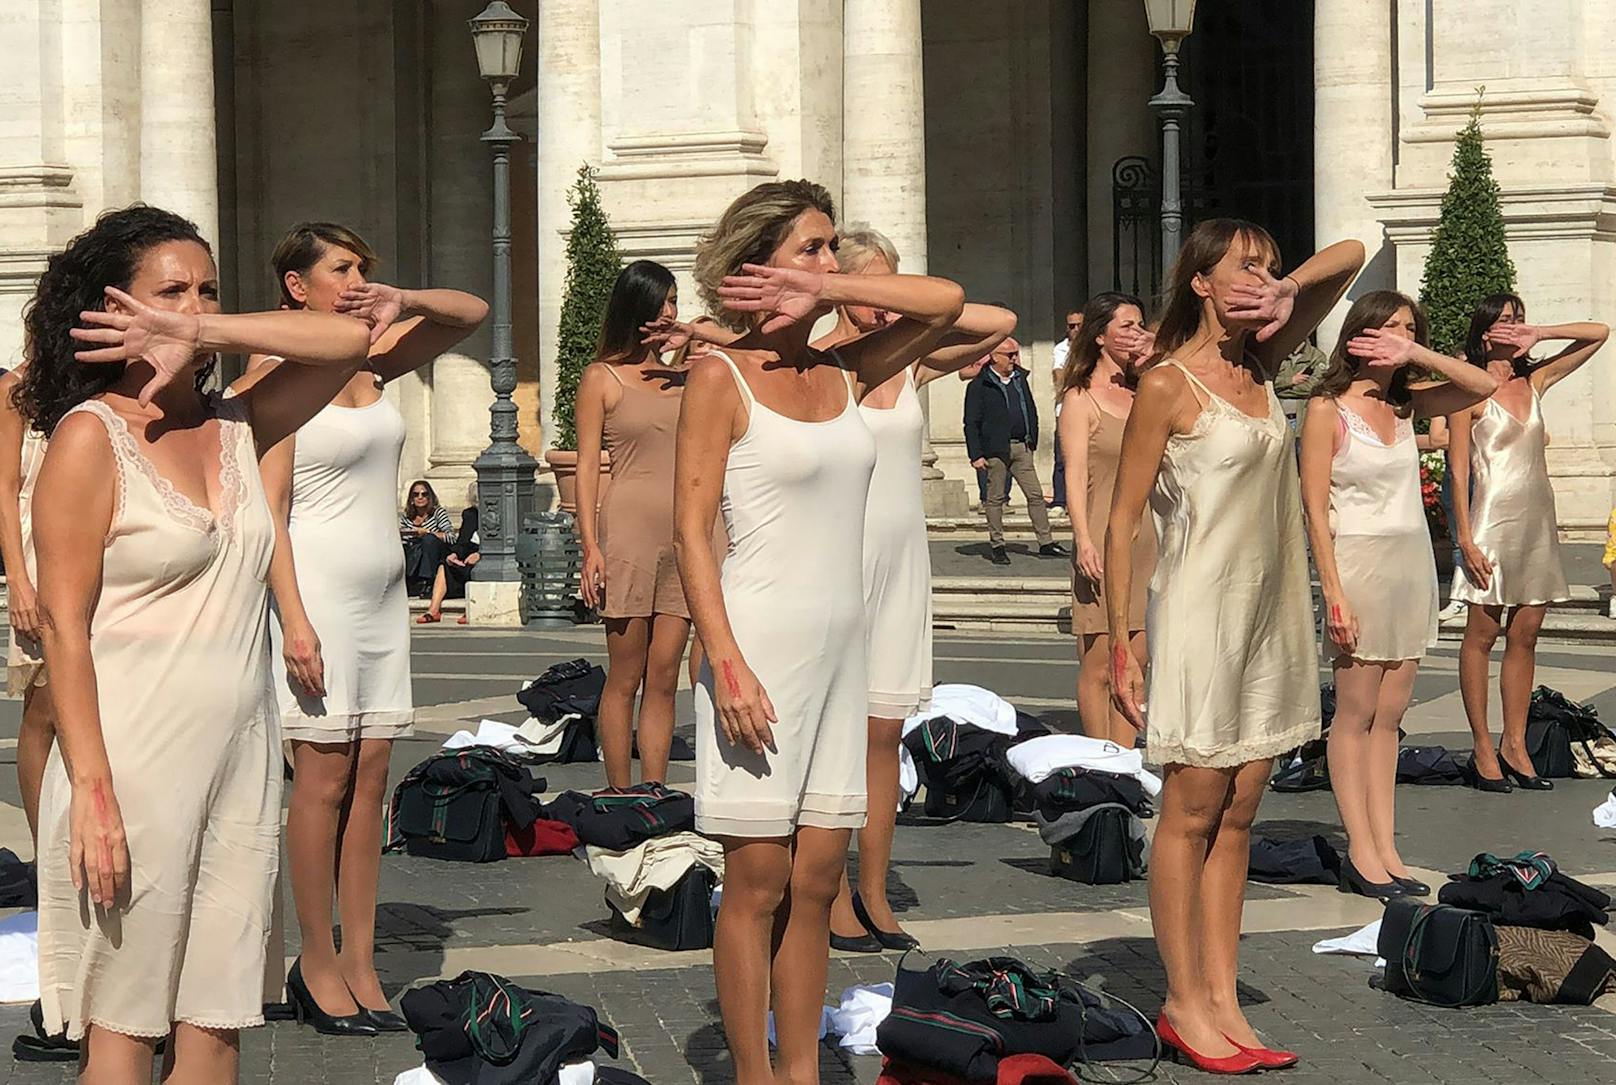 Stewardessen strippen in Rom aus Protest – "Wir sind Alitalia"